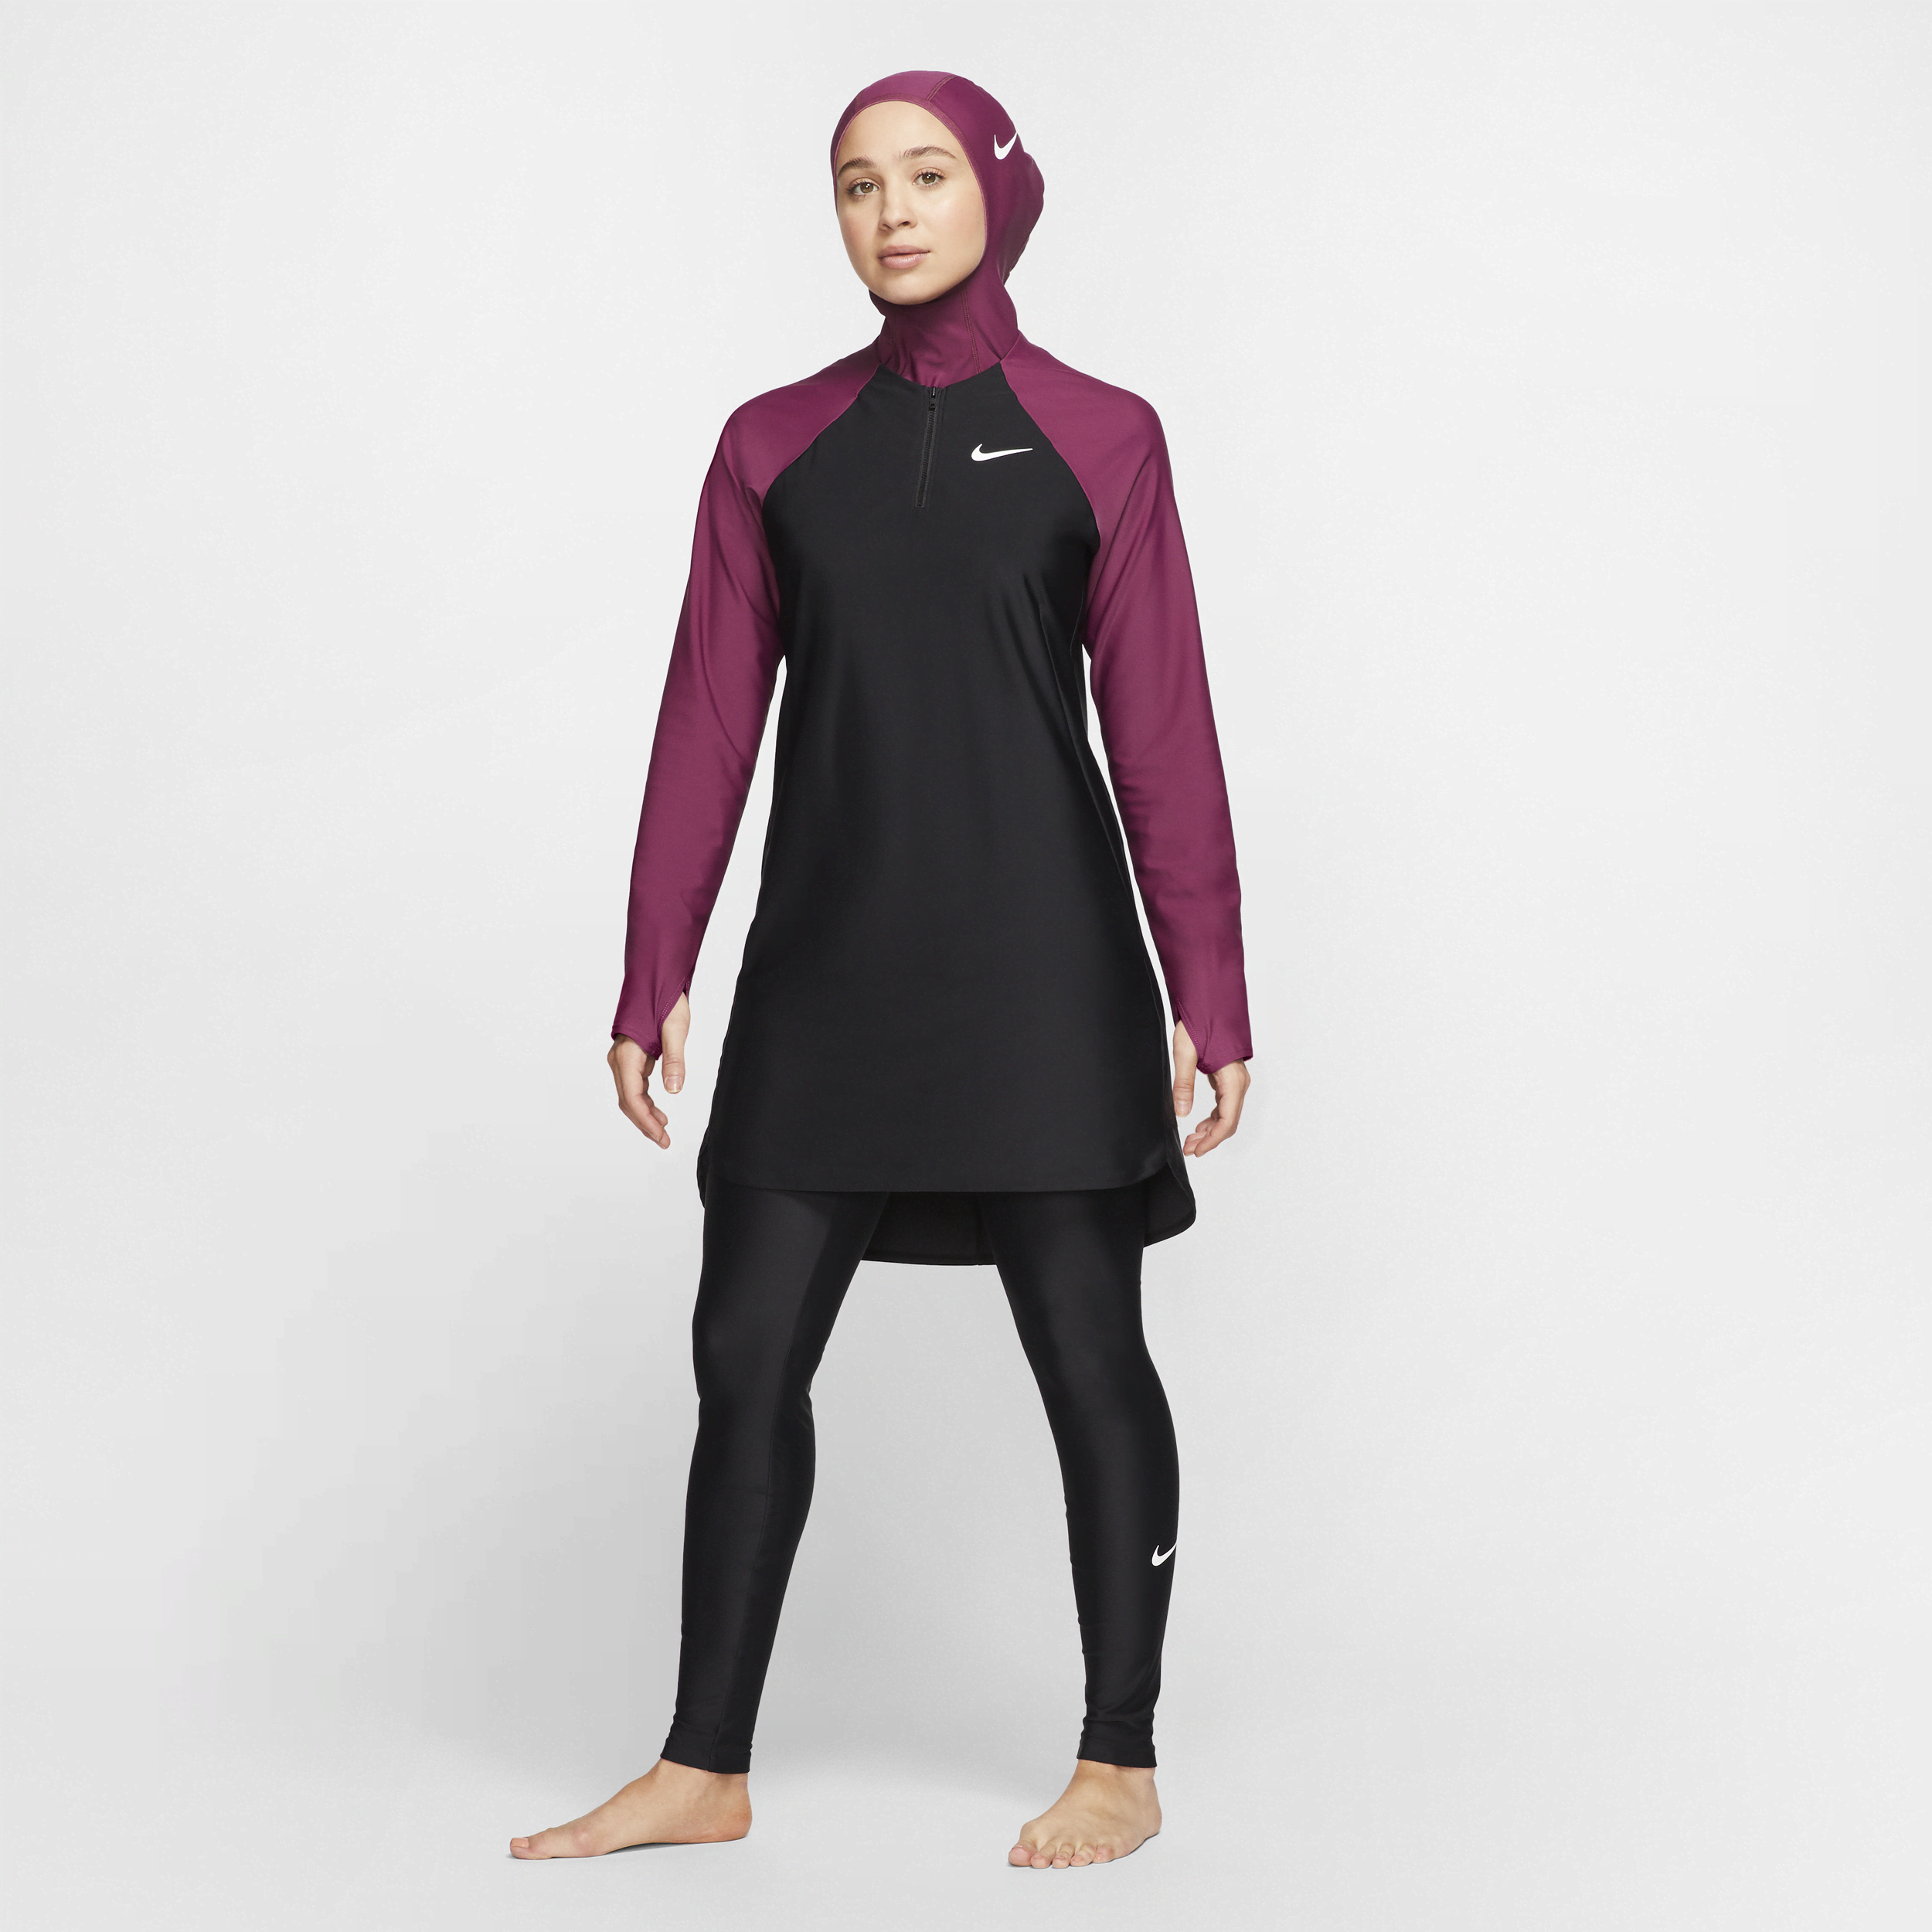 Fuldt dækkende slanke Nike Victory-svømmeleggings til kvinder - sort